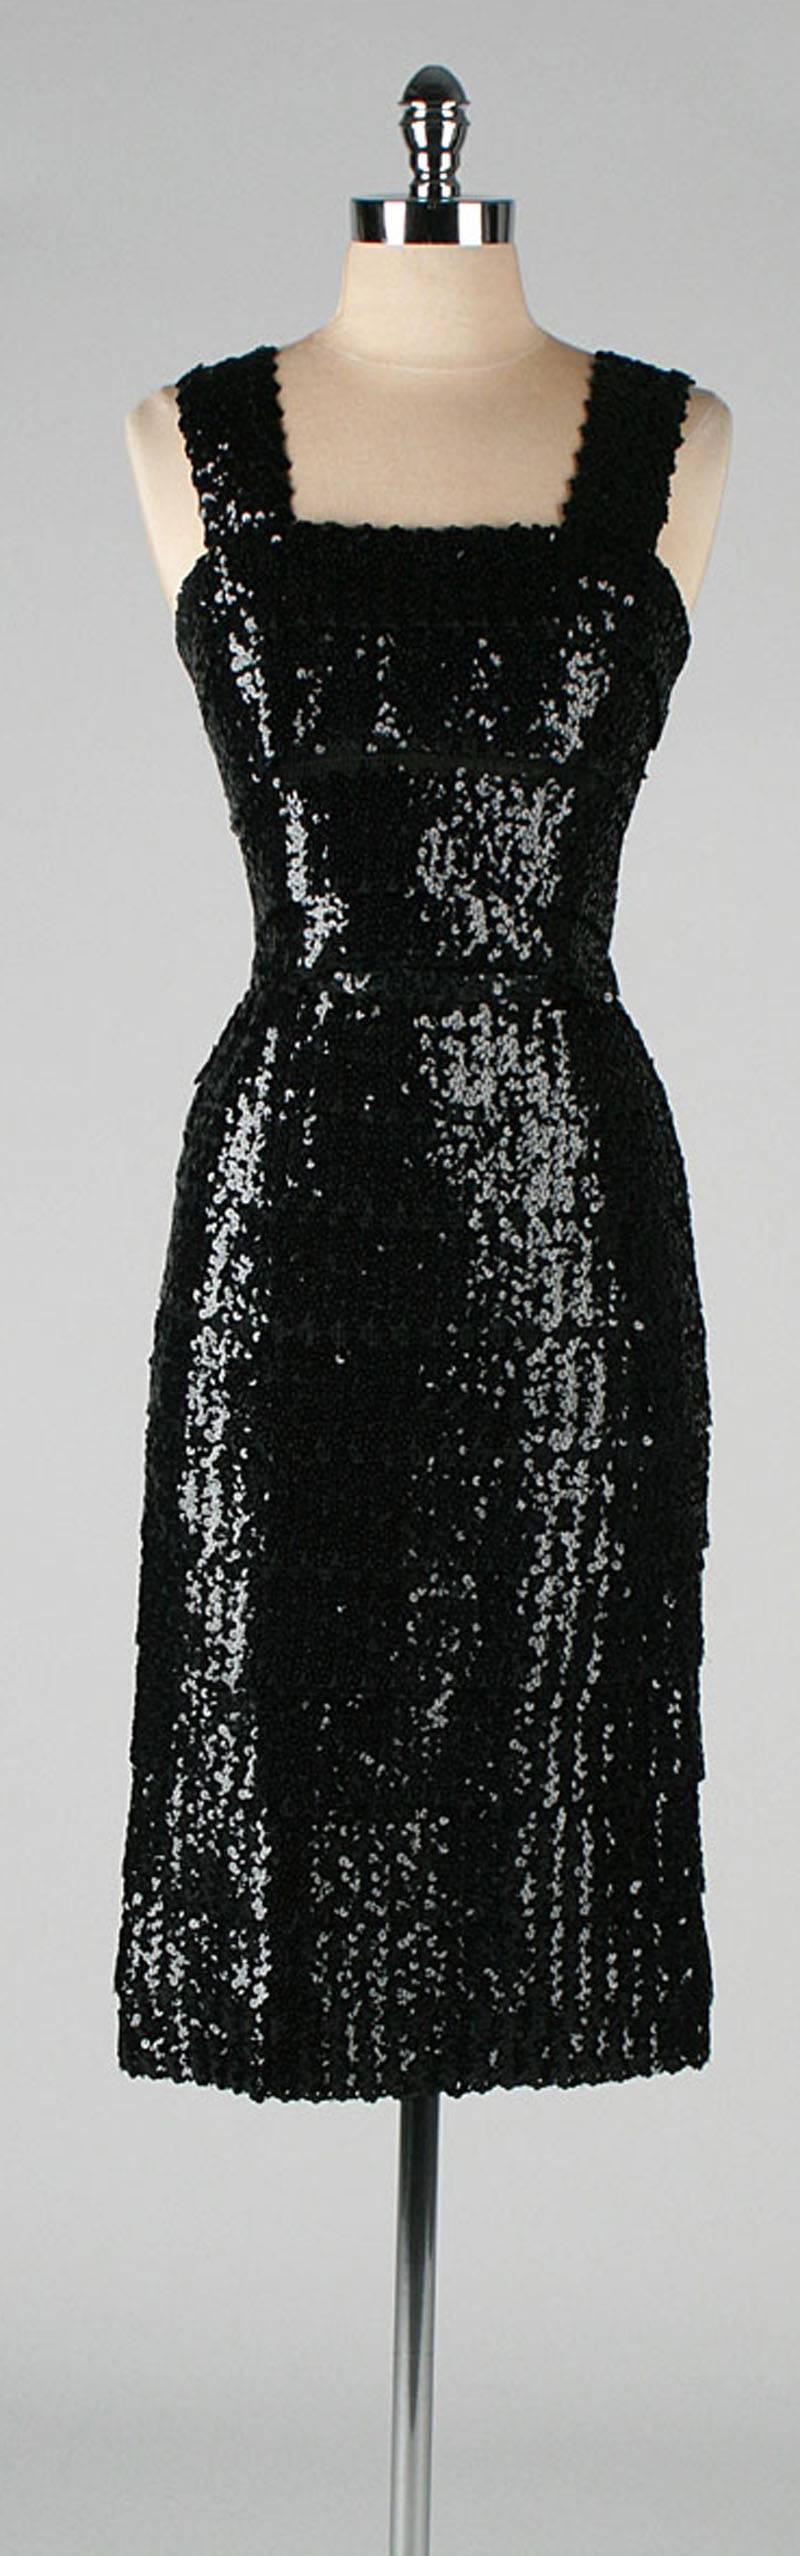  Vintage 1950's Black Sequins Cocktail Dress with Belt  For Sale 5